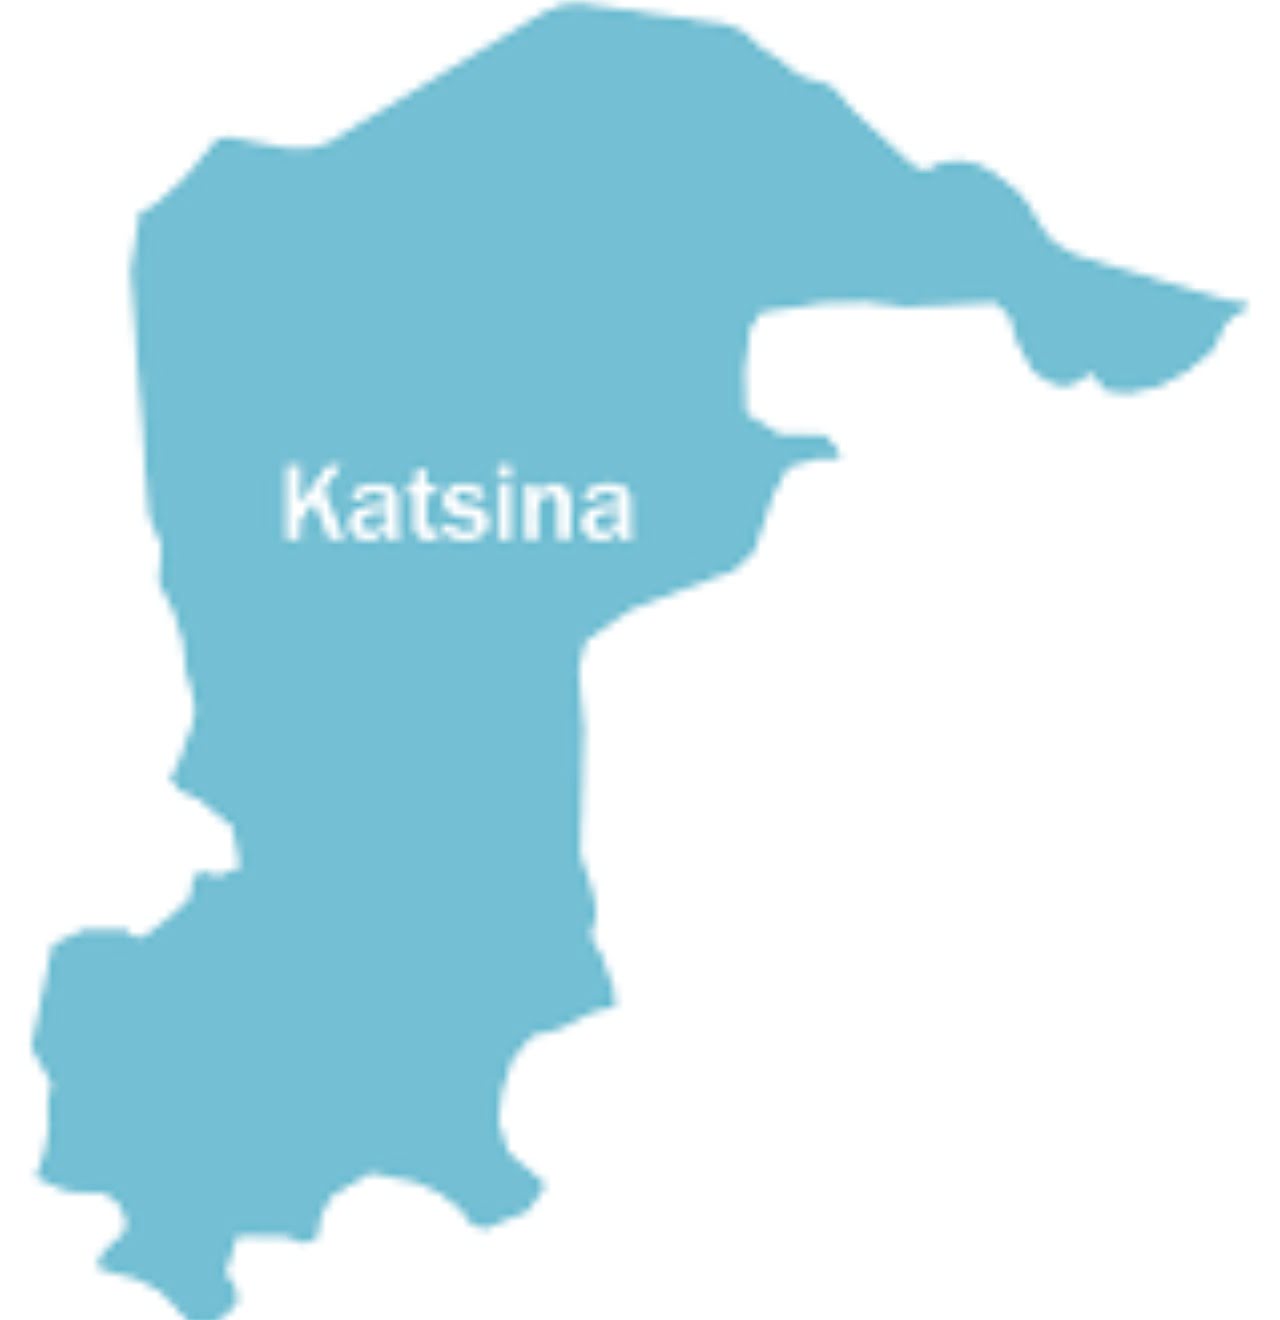 Katsina